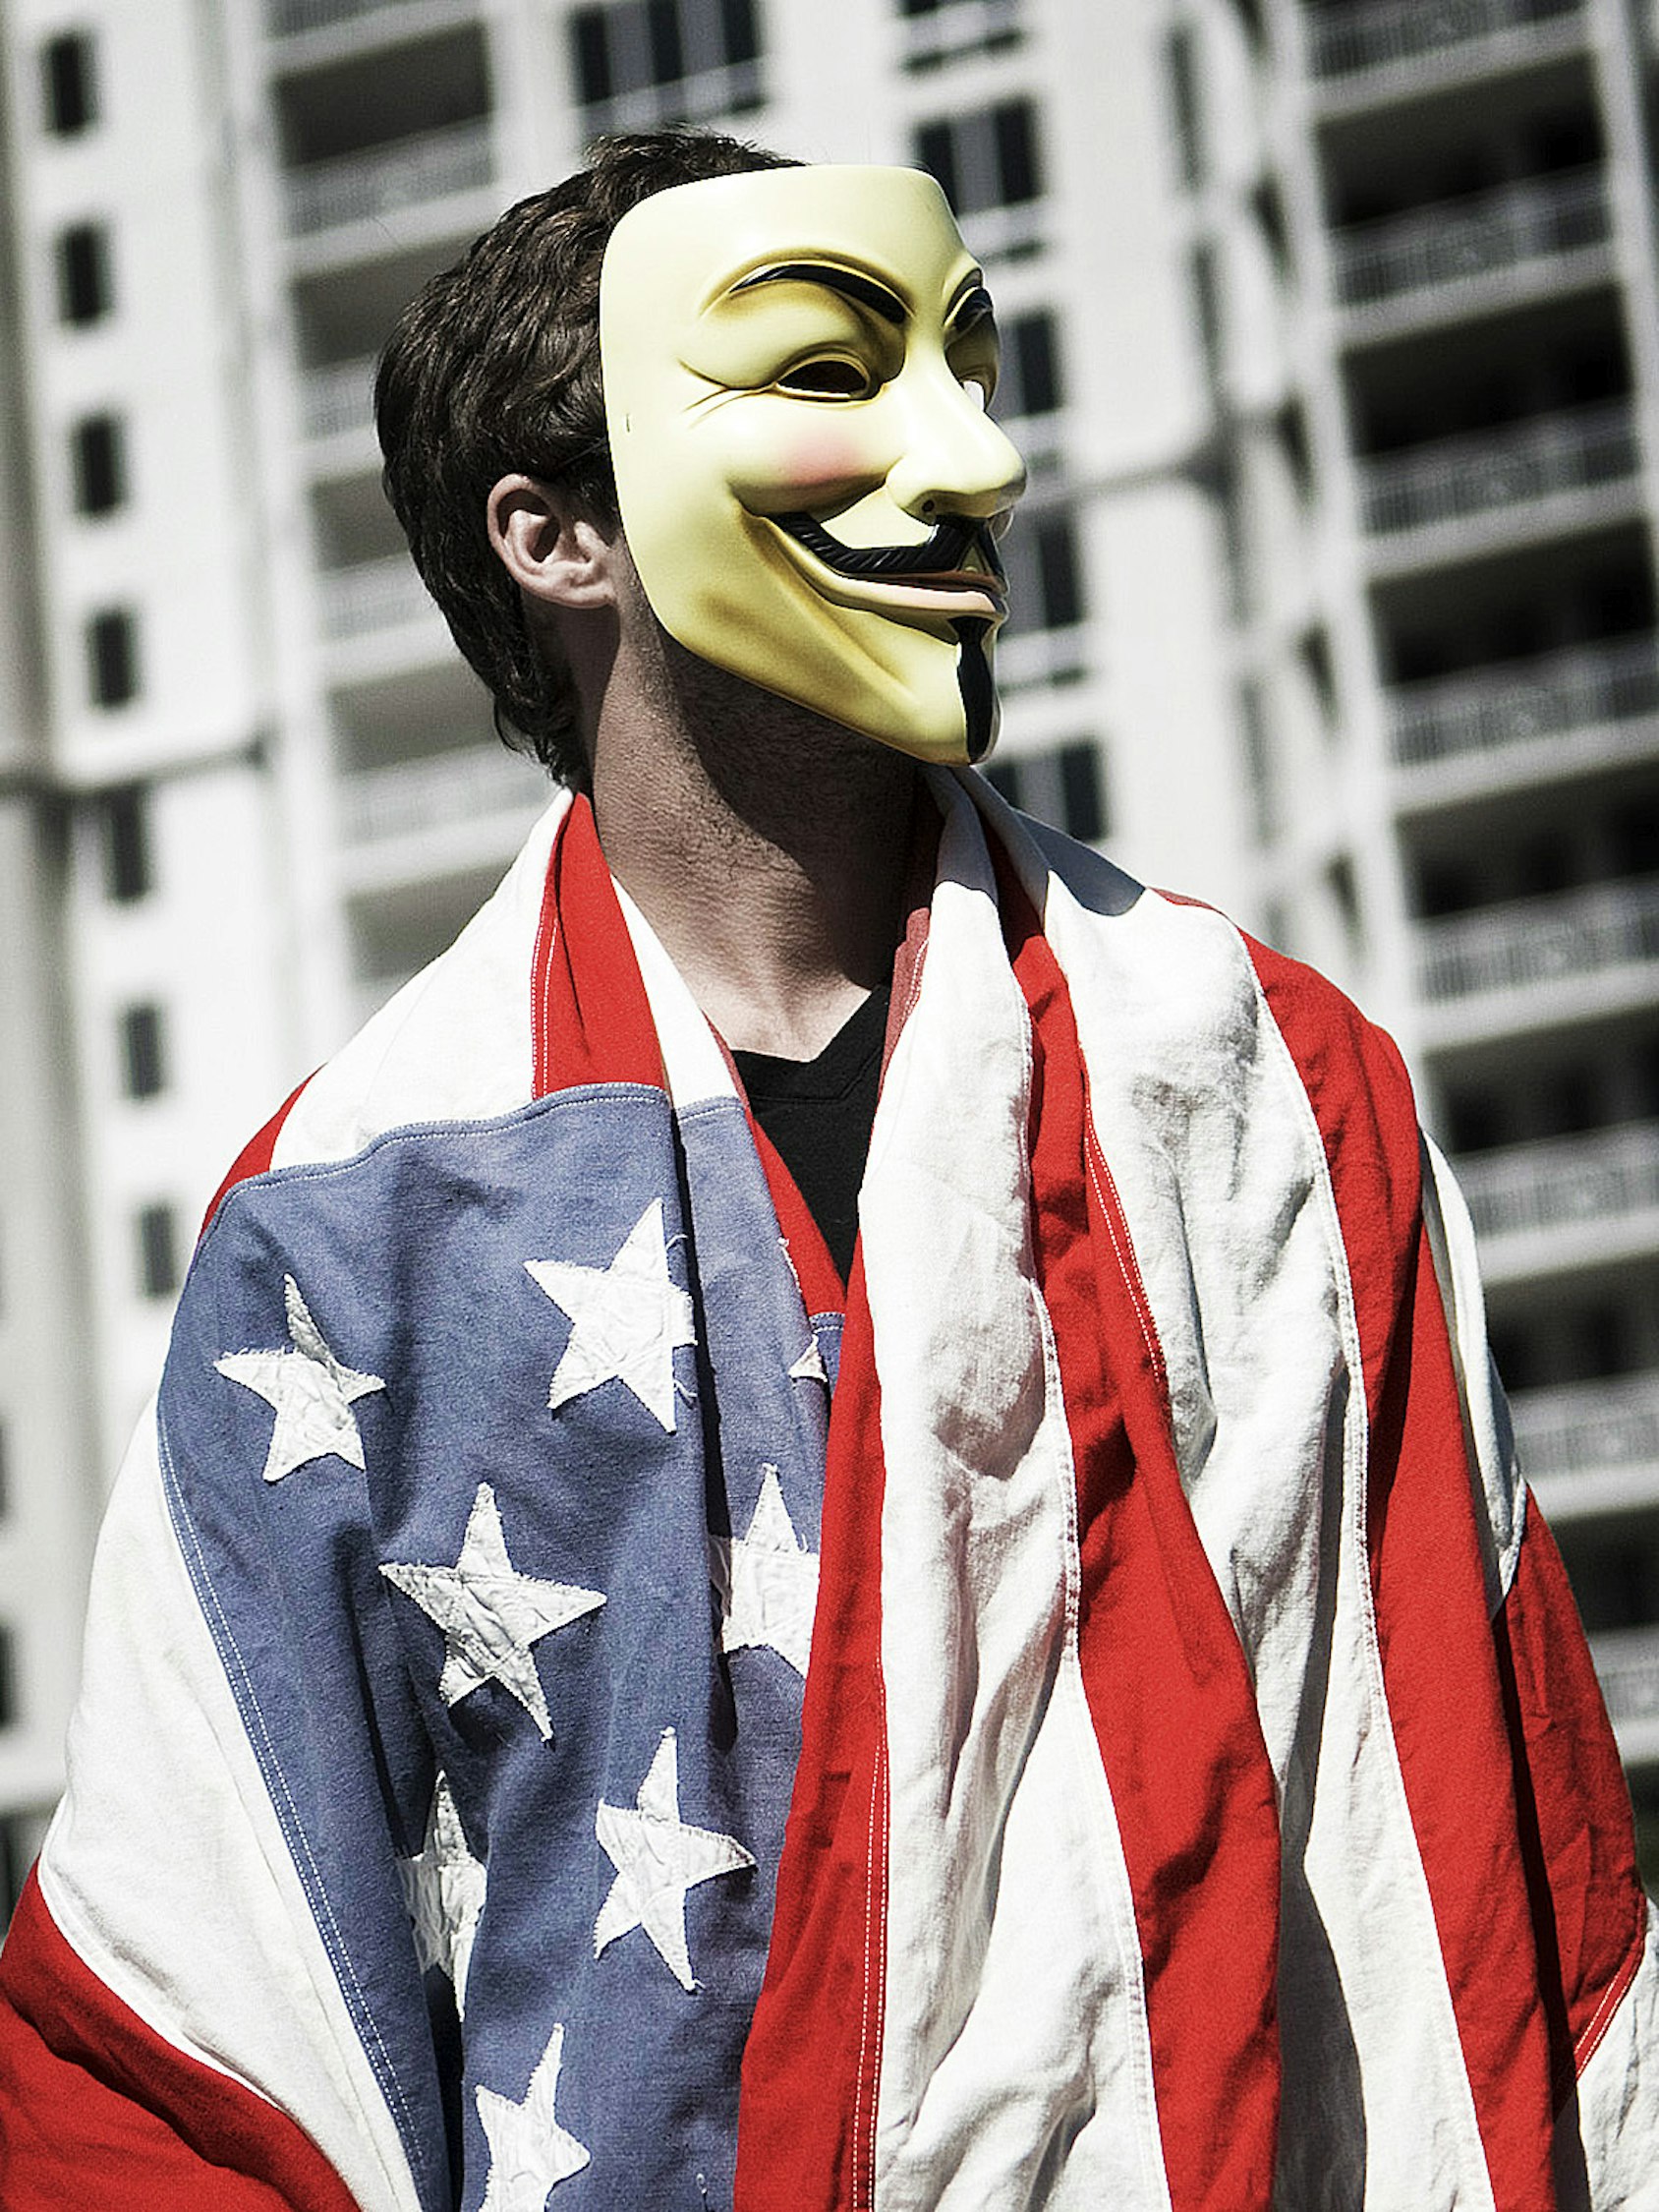 Человек в маске. Американец в маске. Американская маска. Популярные маски.